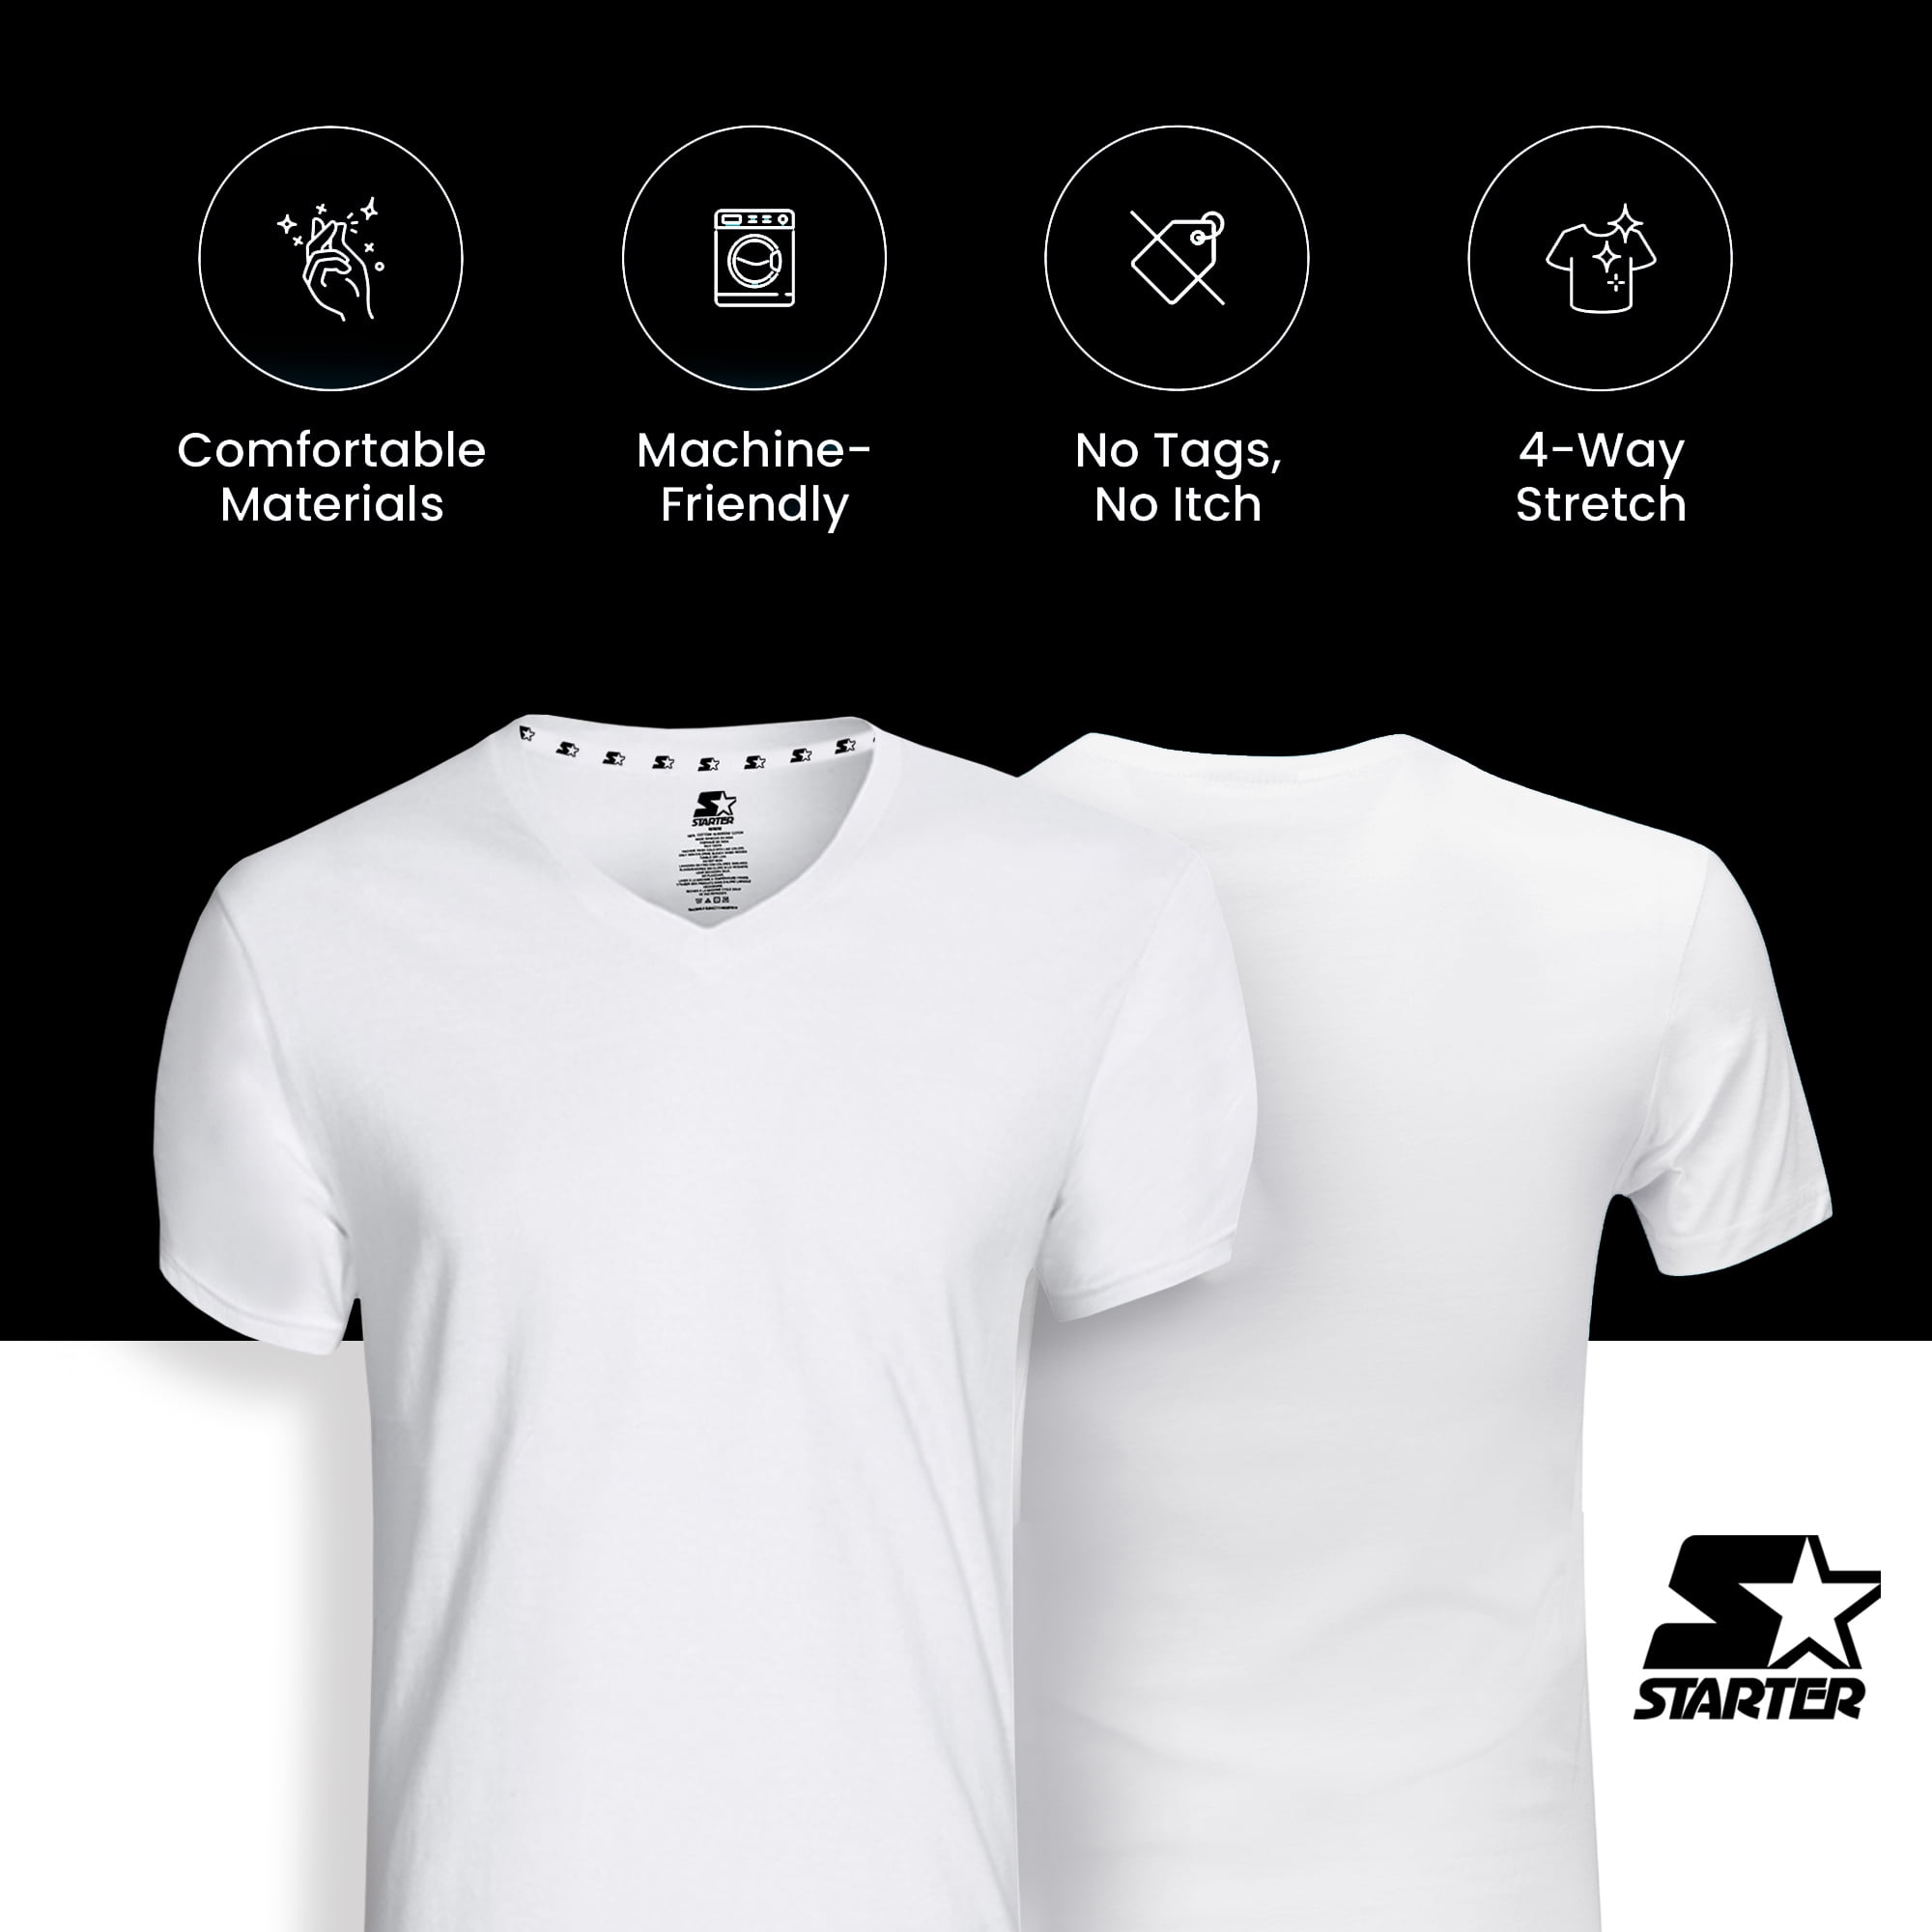 Starter Men’s Essential V Neck White Undershirt Breathable Cotton Shirt,  6-Pack